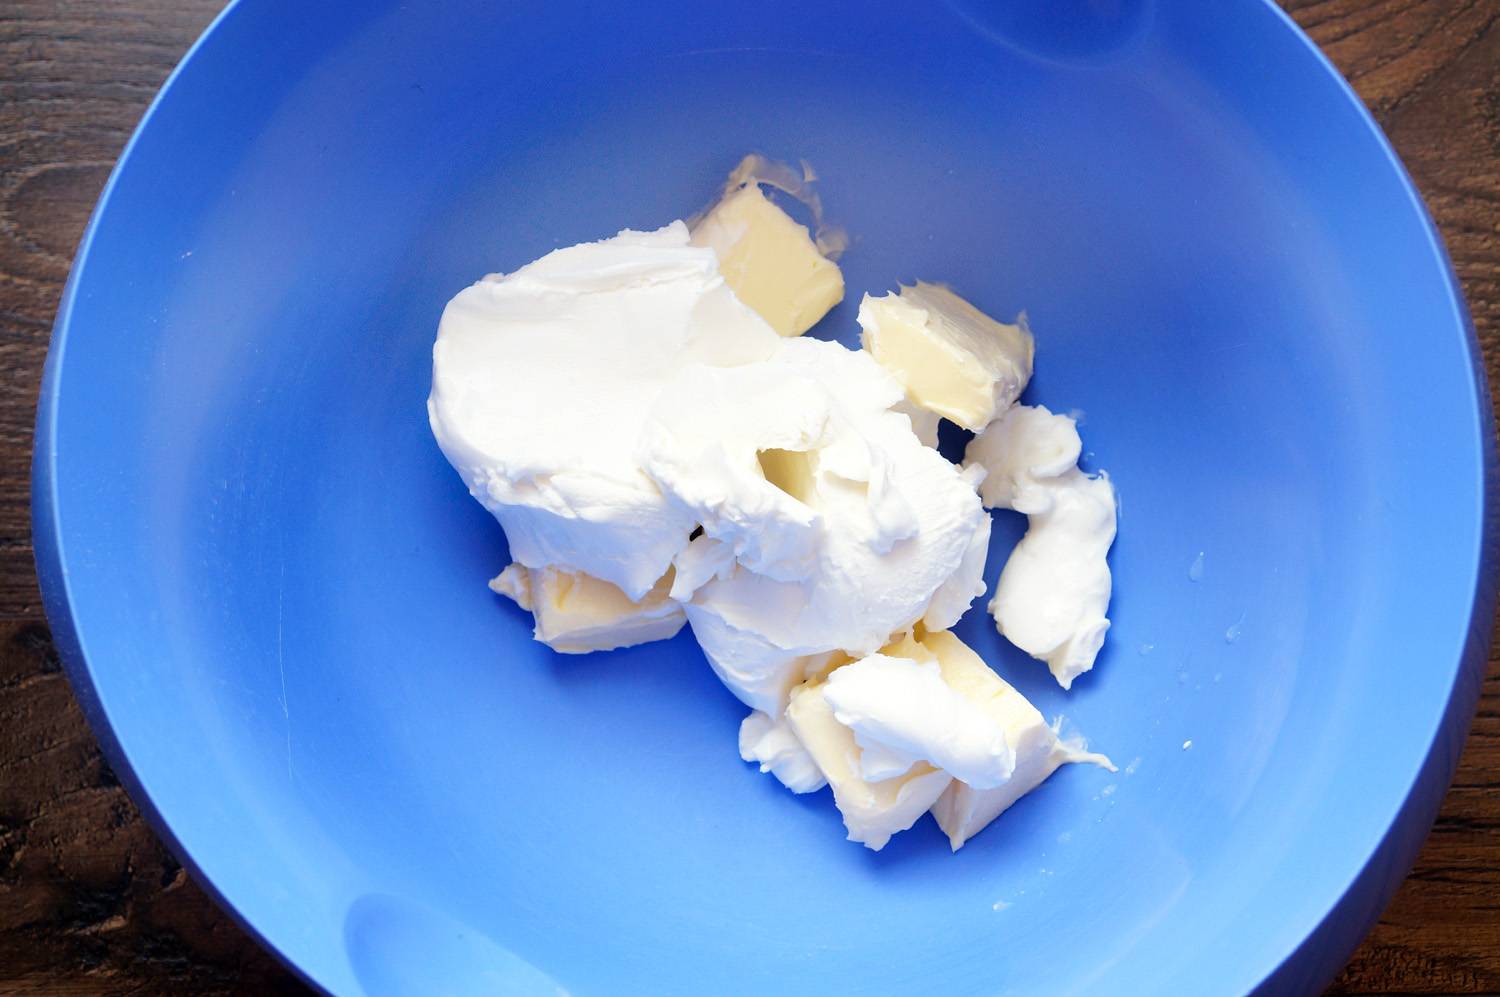 Крем на основе творожного сыра и масла для тортов и капкейков, пошаговый фото рецепт, кулинарный блог andychef.ru